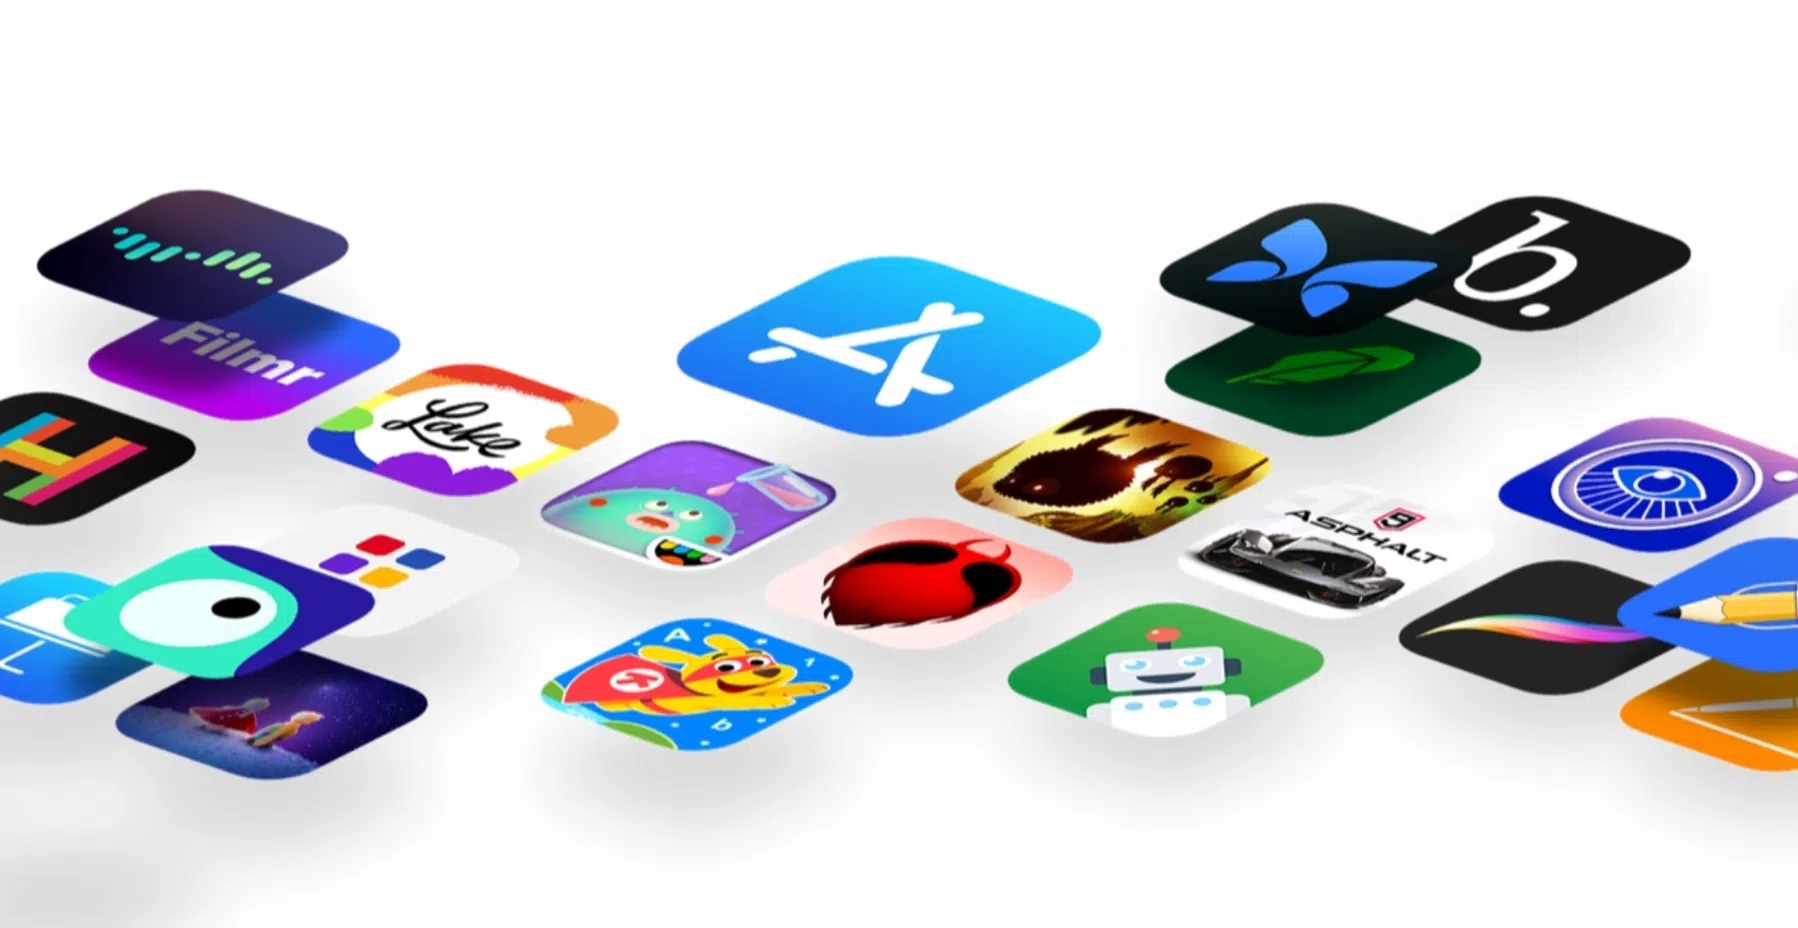 iPhone-apps vanaf vandaag ook beschikbaar buiten appwinkels om, gewoon via het web